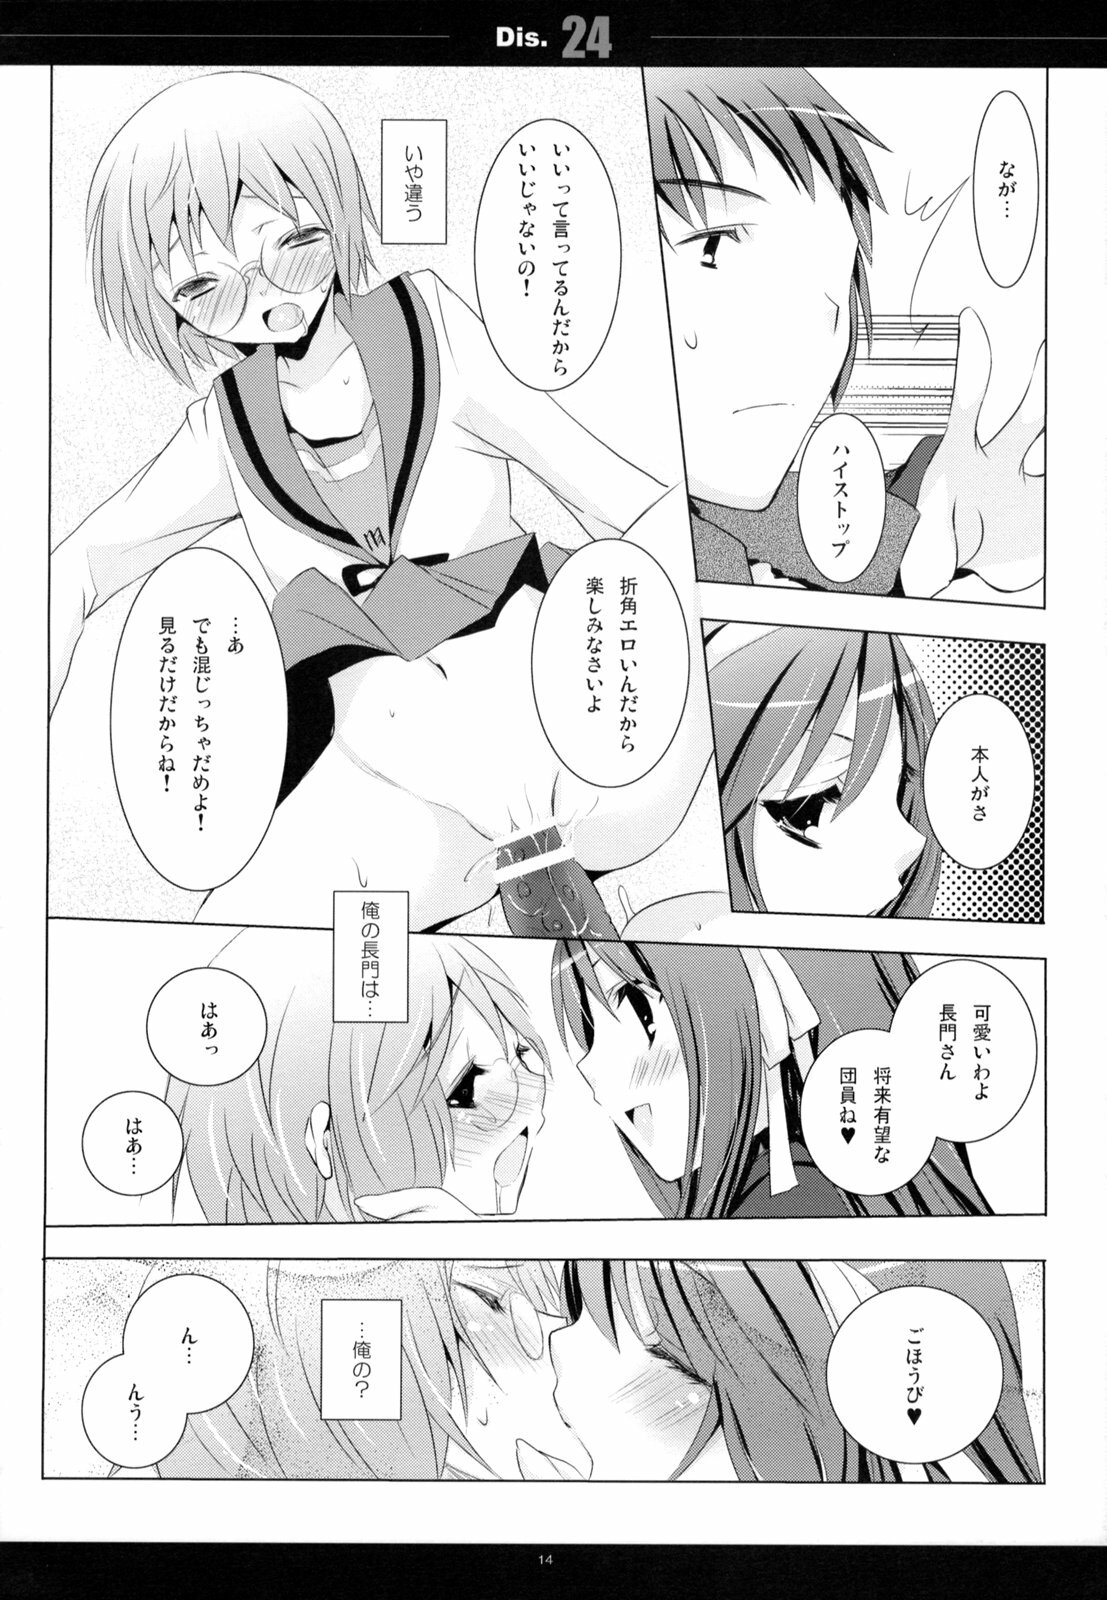 (C75) [honeyking (Mitsu King)] Dis.24 (The Melancholy of Haruhi Suzumiya) page 13 full